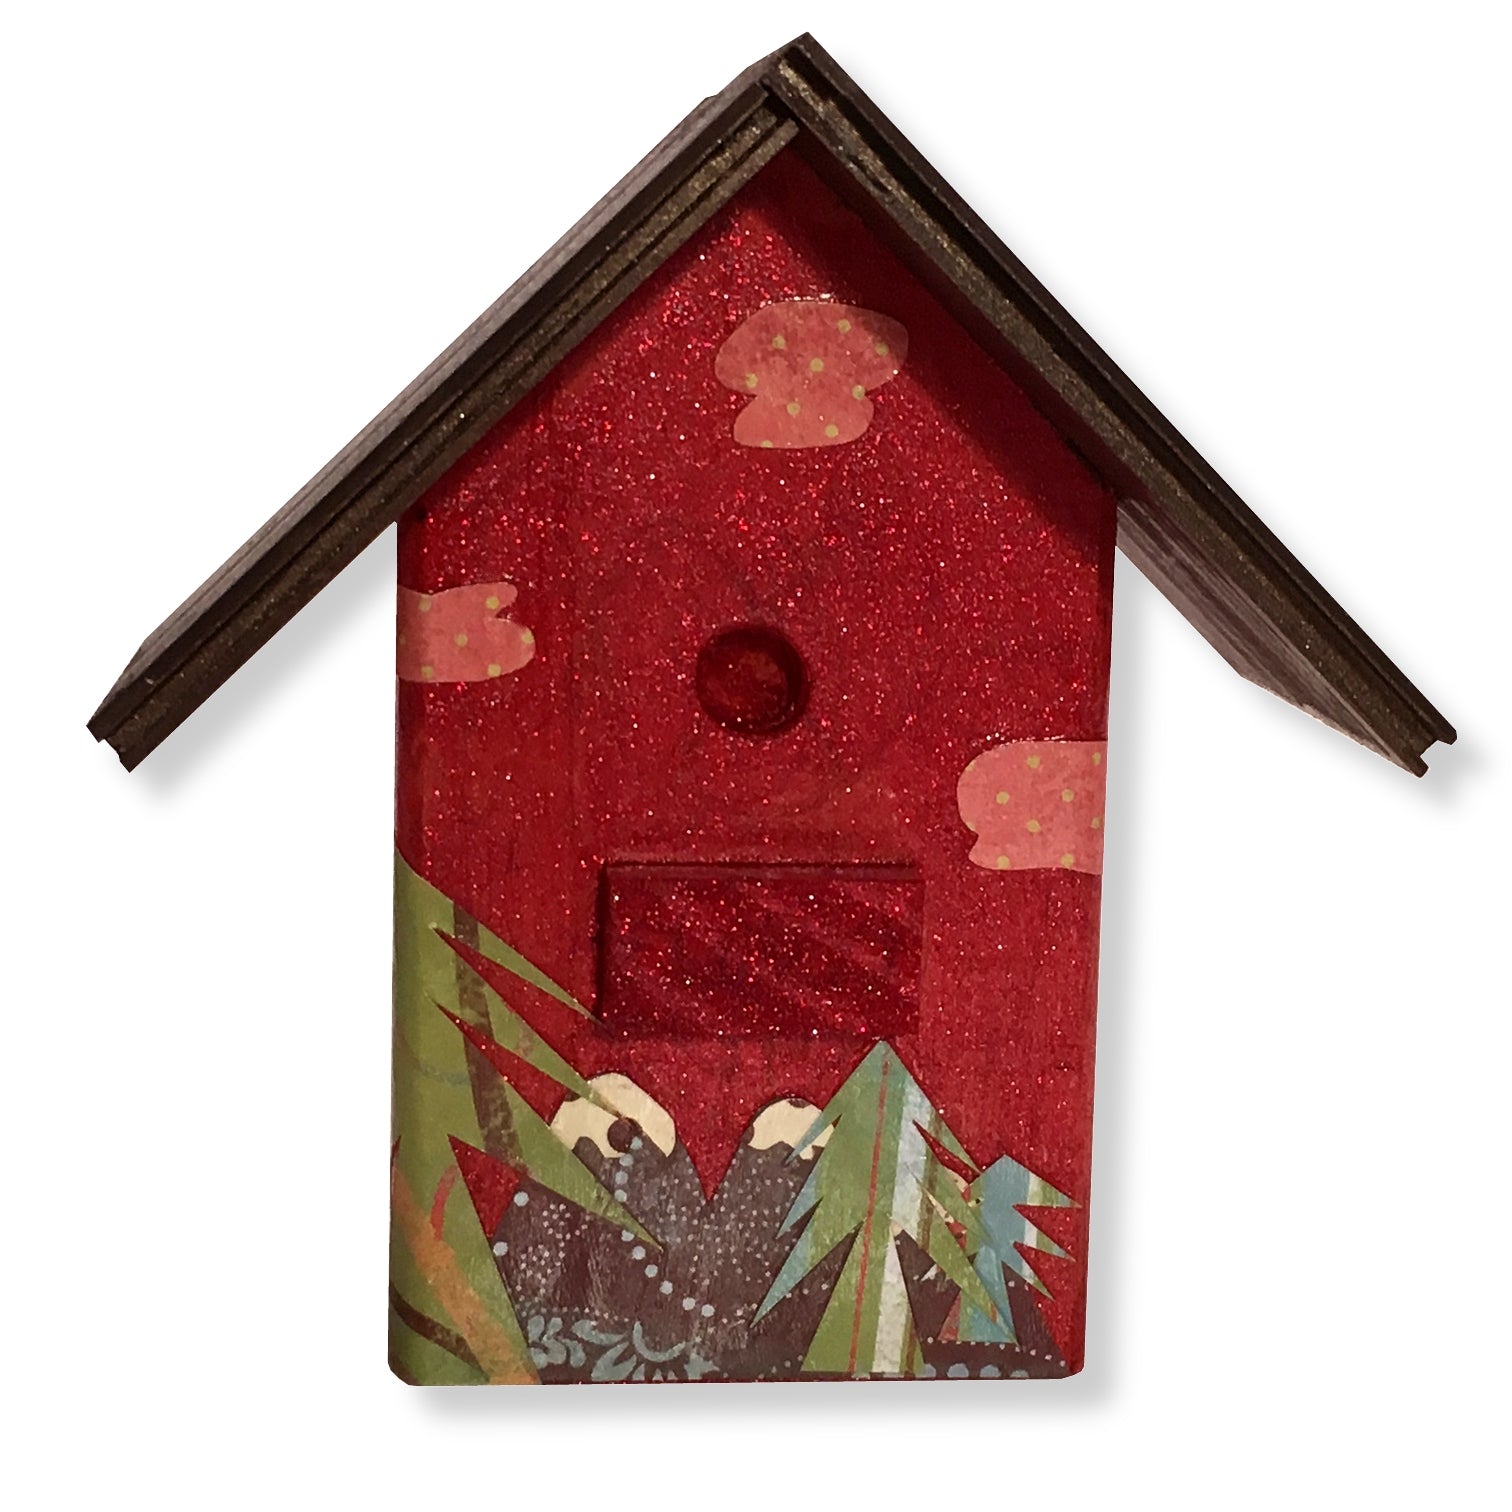 Alpine Dreams Decorative Birdhouse